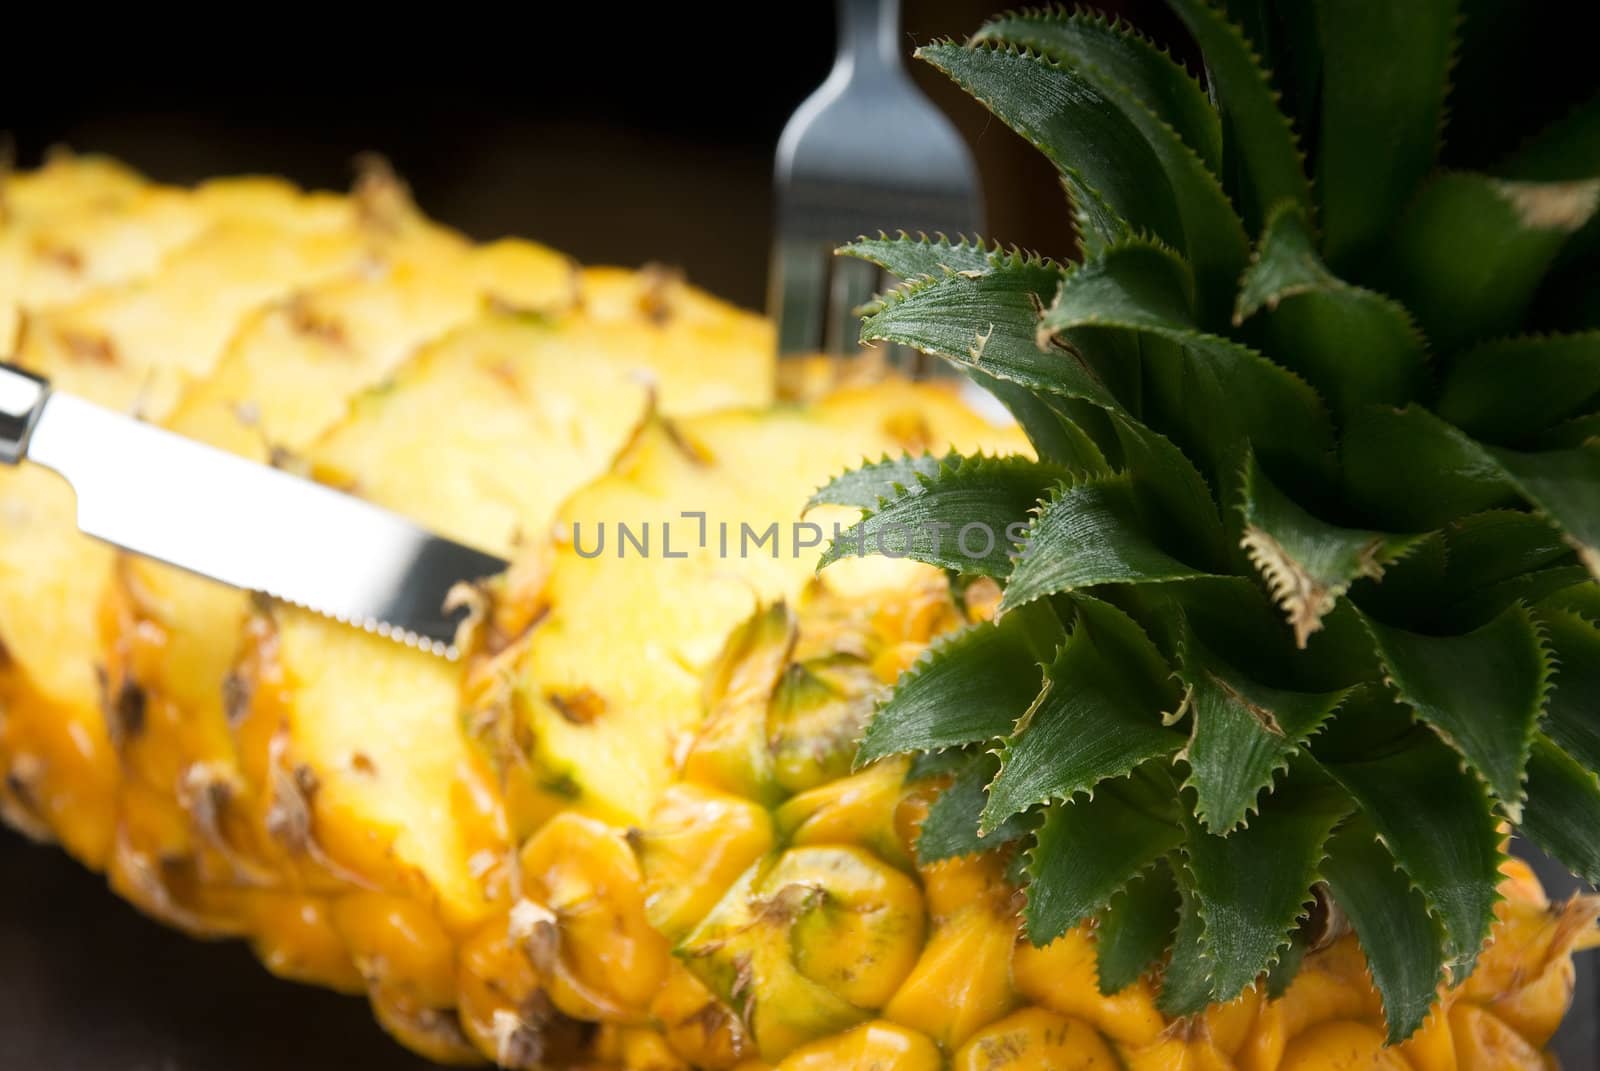 pineapple by keko64